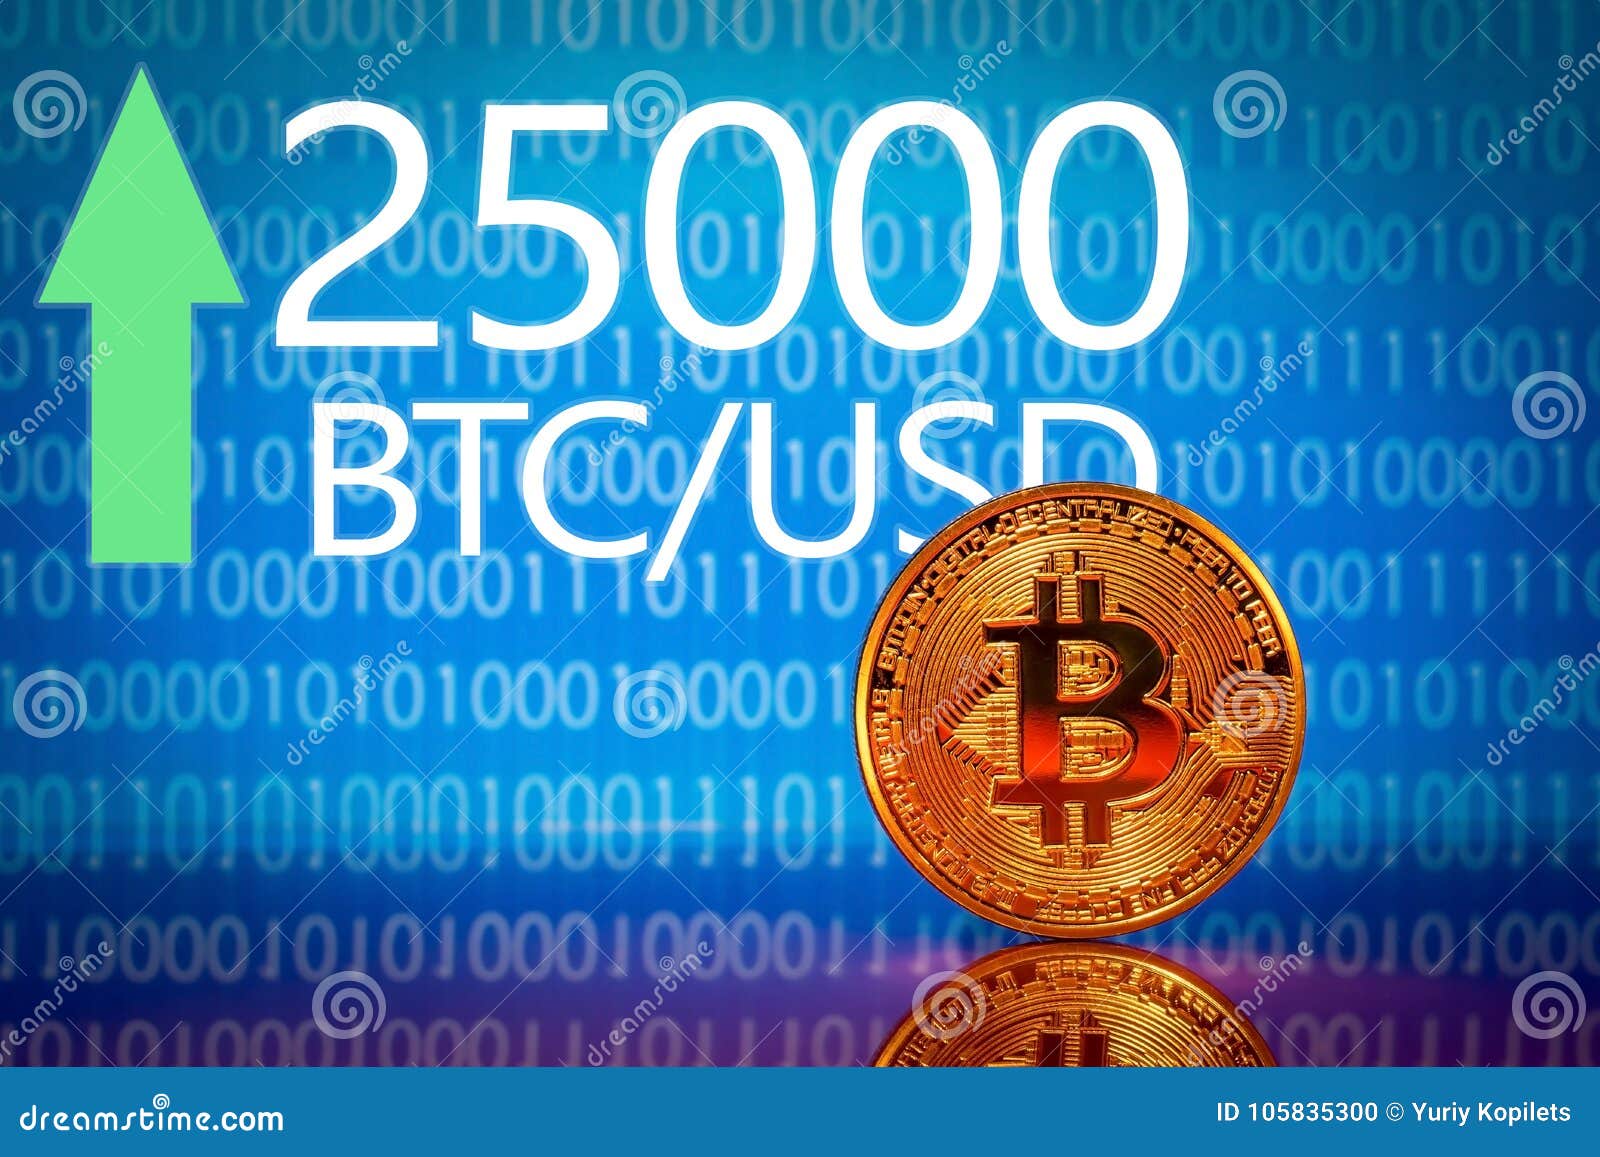 btc market us bitcoin la tranzacționare usd